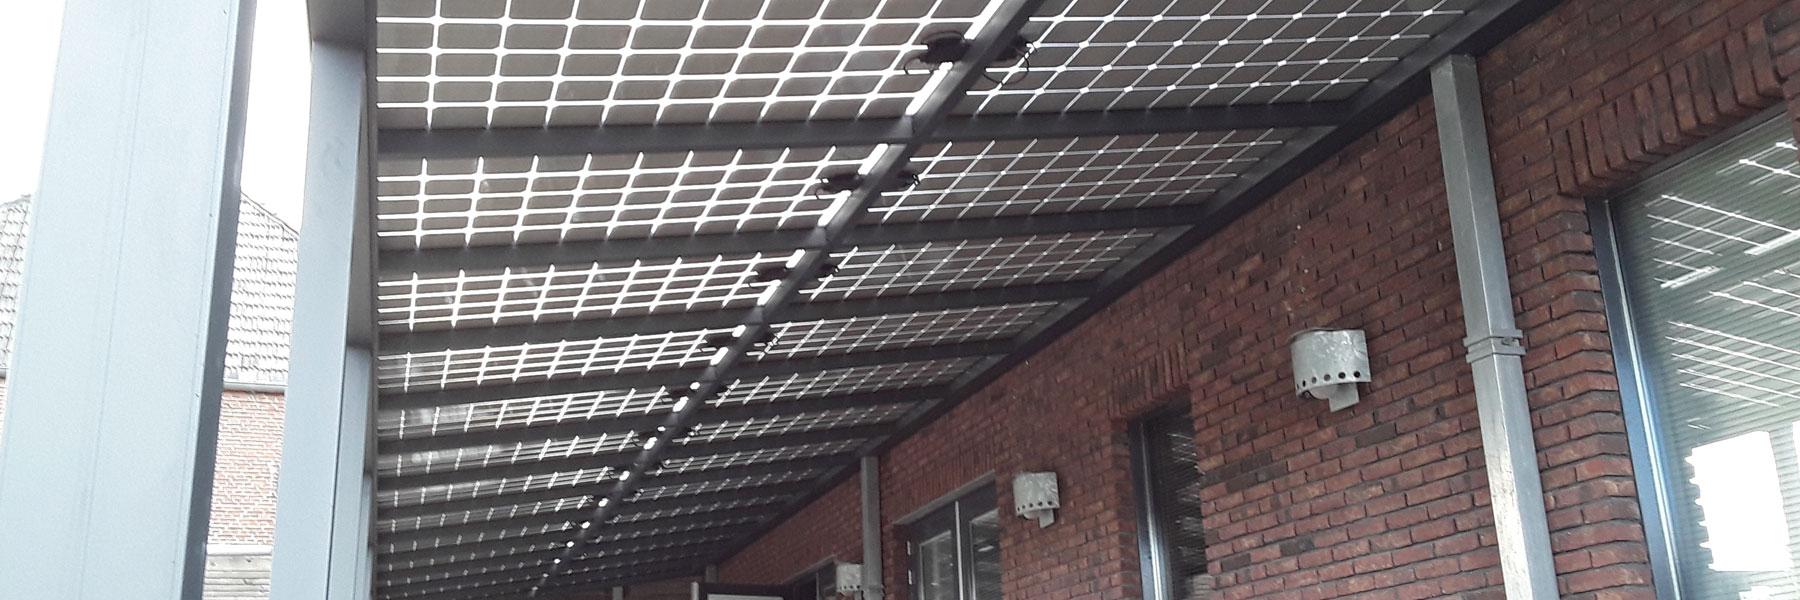 in-het-hout-sierconstructies-solar-veranda-slide-2